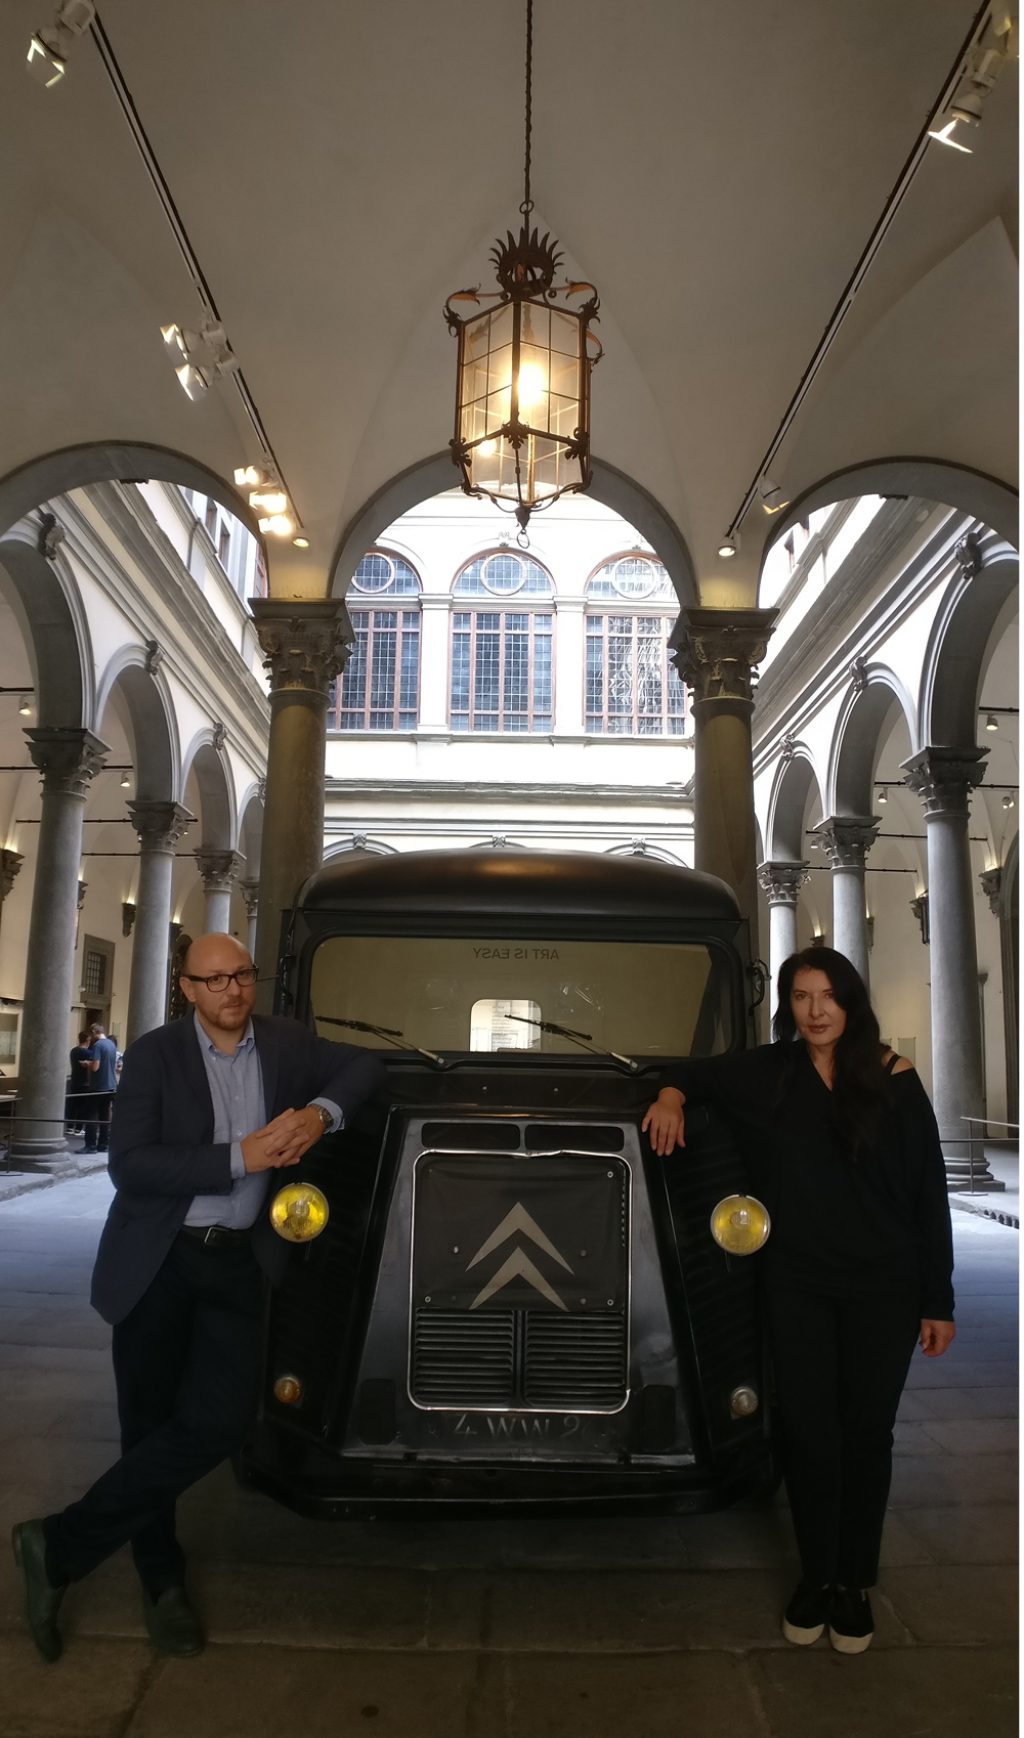 Il furgone Citroën a palazzo Strozzi